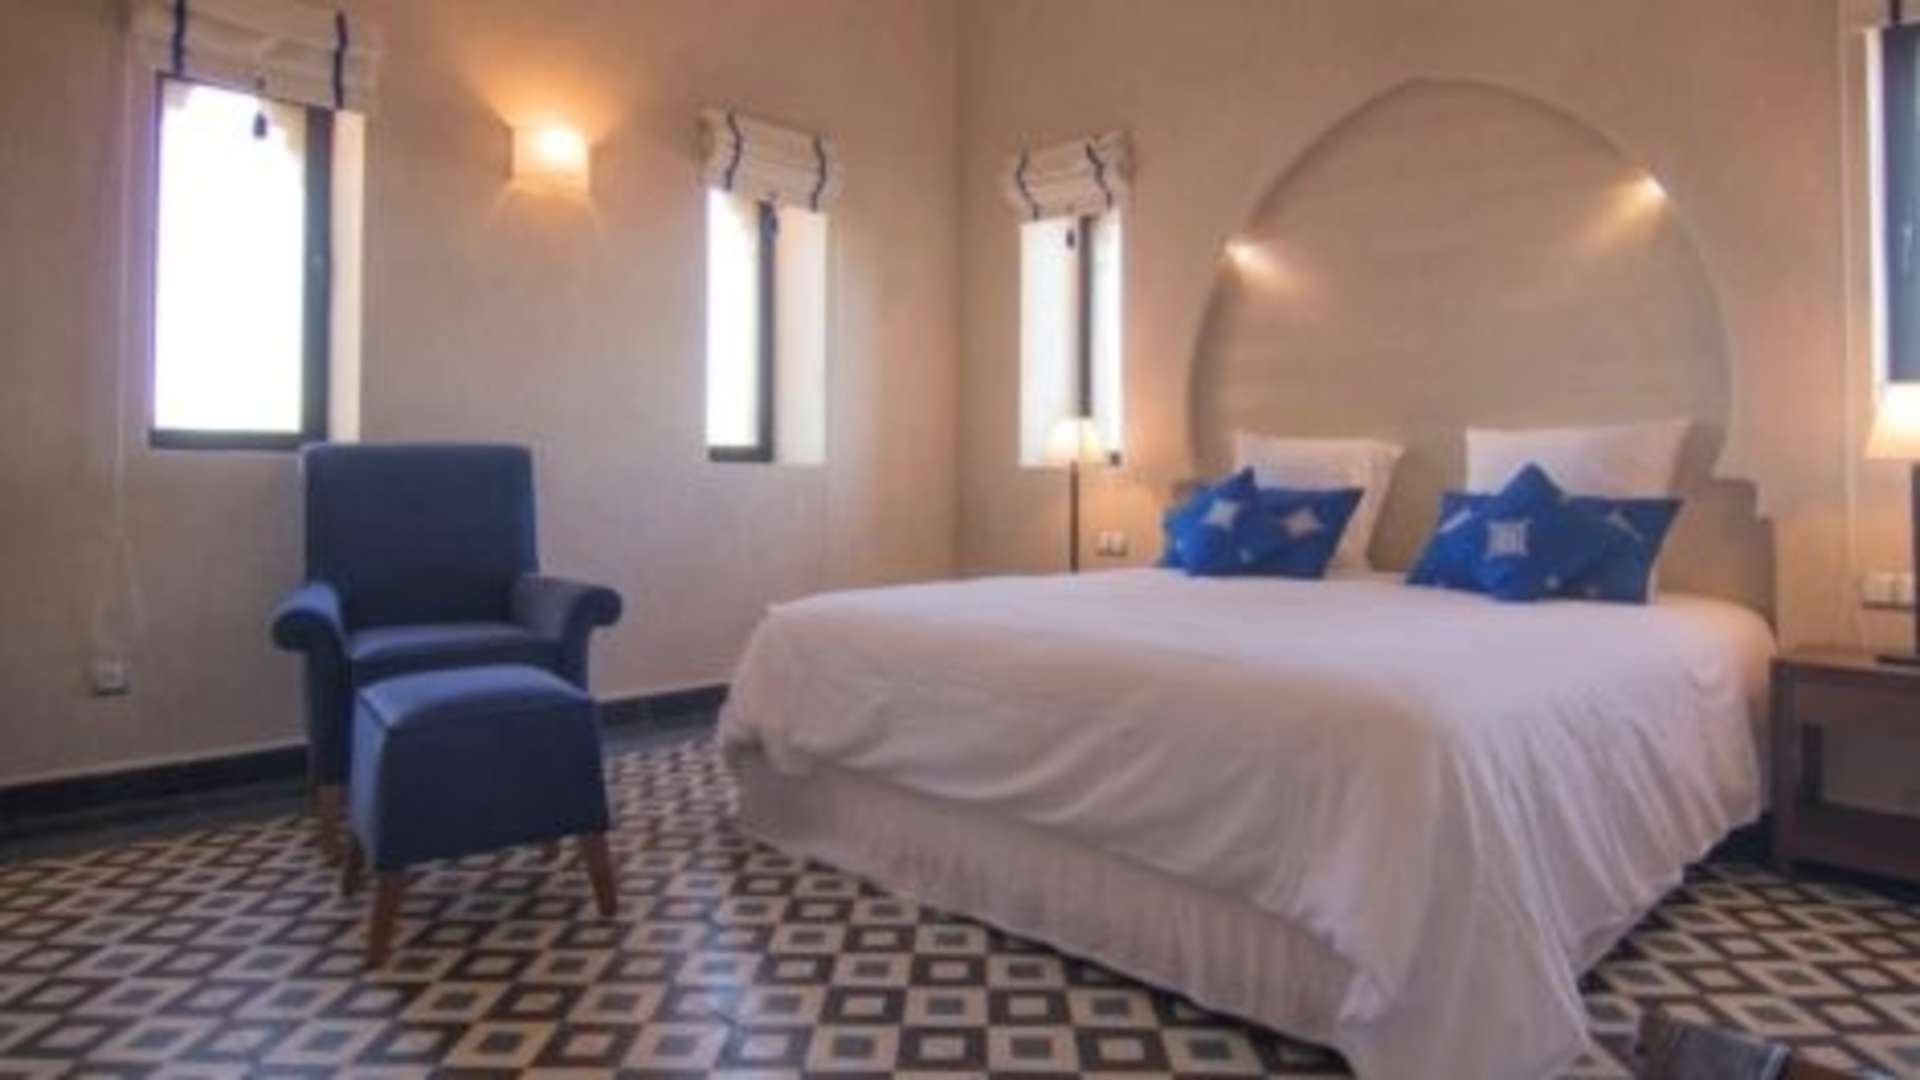 Vente,Villa,Programme immobilier Neuf de villas privées sur la route de Fès à Marrakech,Marrakech,Route de Fès